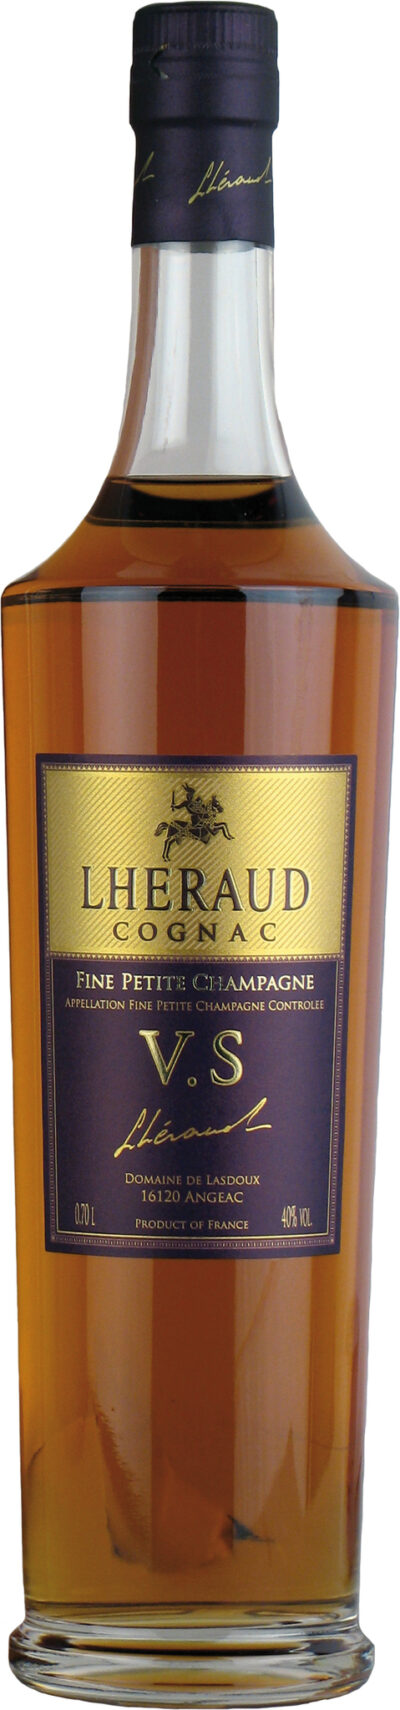 Lhéraud Cognac Fine Petite Champagne V.S.